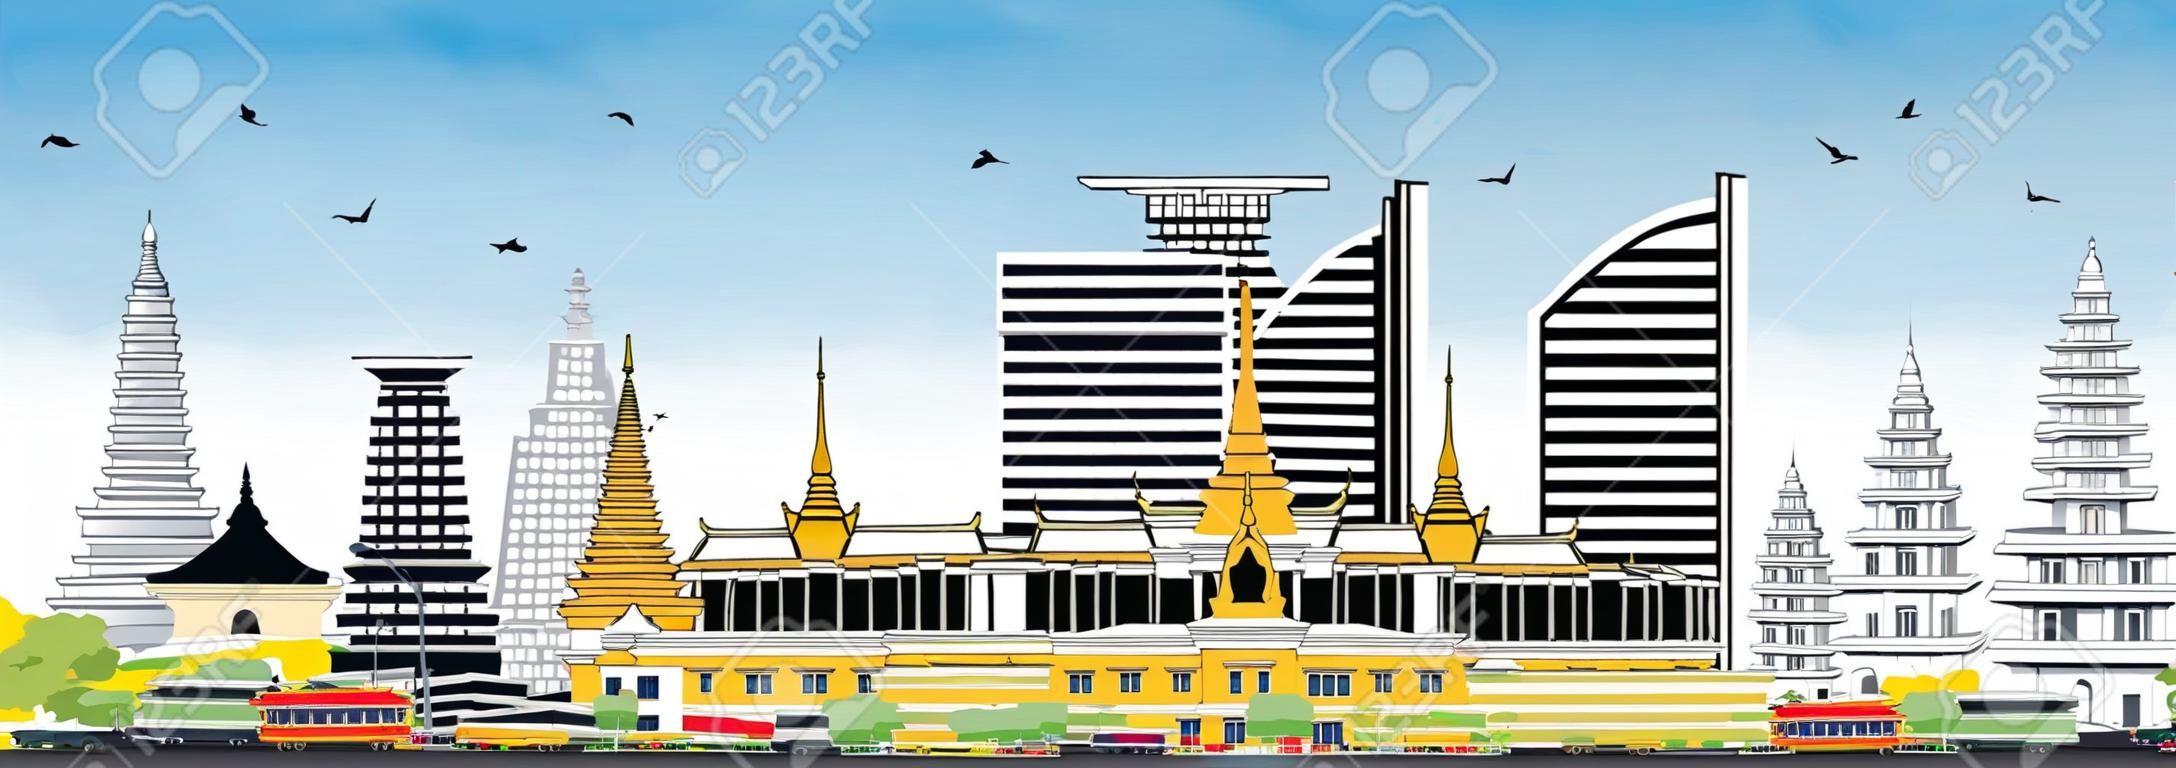 プノンペンカンボジア市スカイラインと色の建物と青空。ベクトル図。歴史的建築を用いてビジネス旅行と観光のコンセプト。ランドマークとプノンペン市街並み。